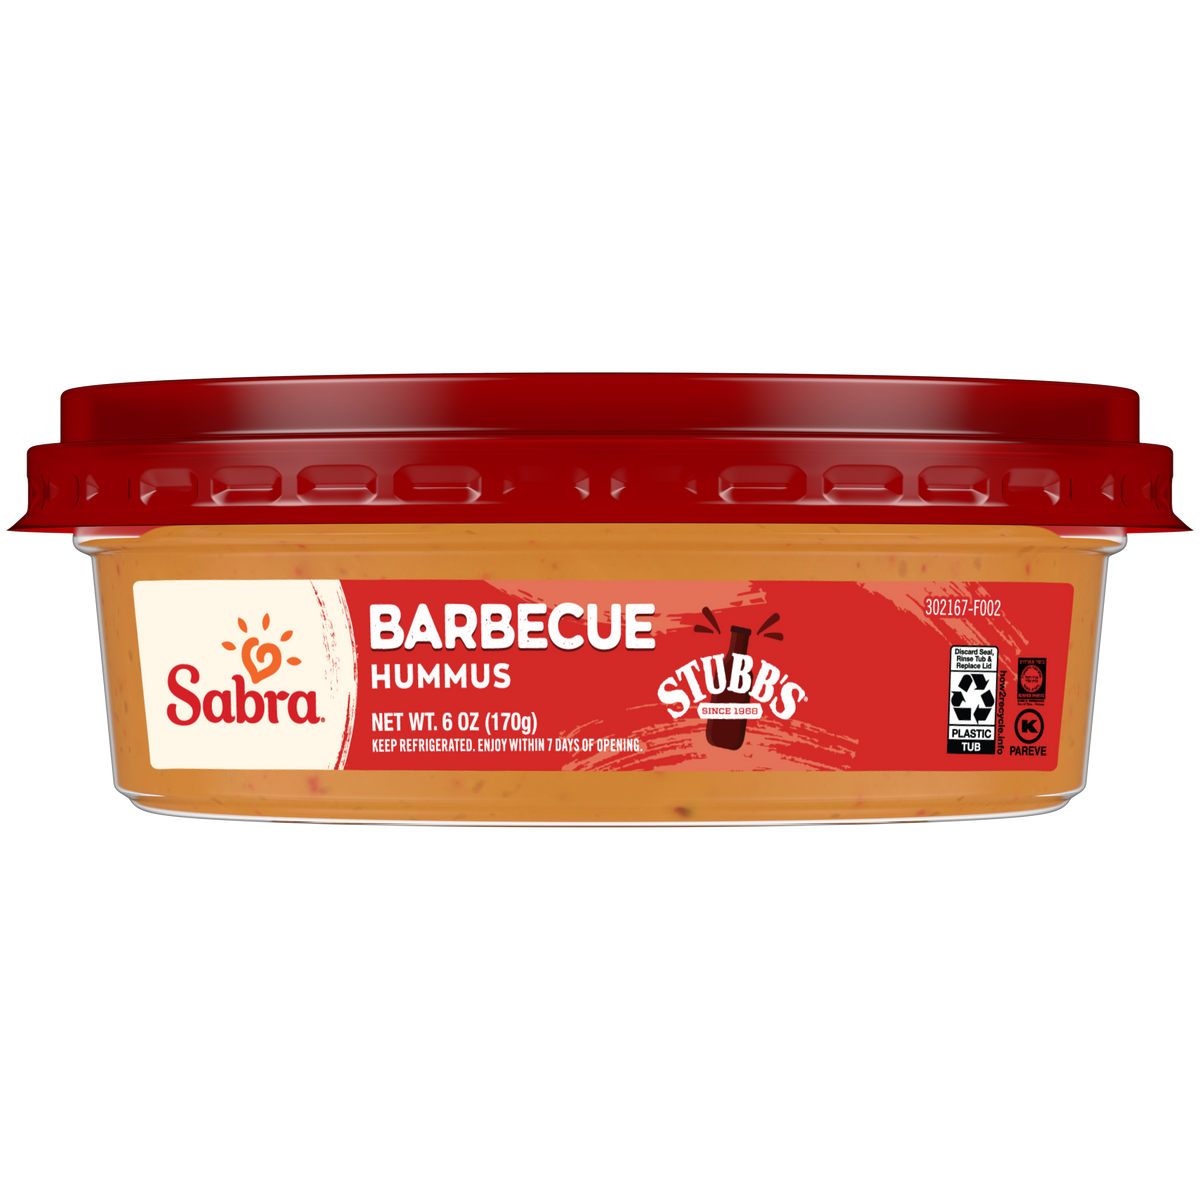 Sabra Barbecue Hummus - 6oz